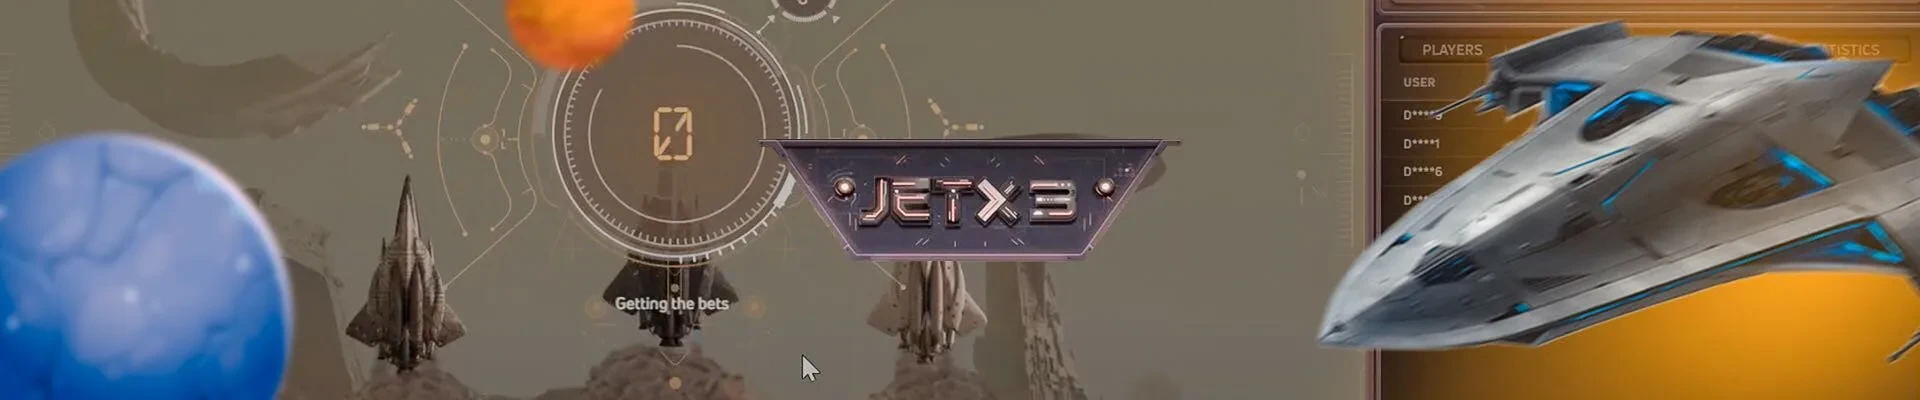 jetx 3 game header